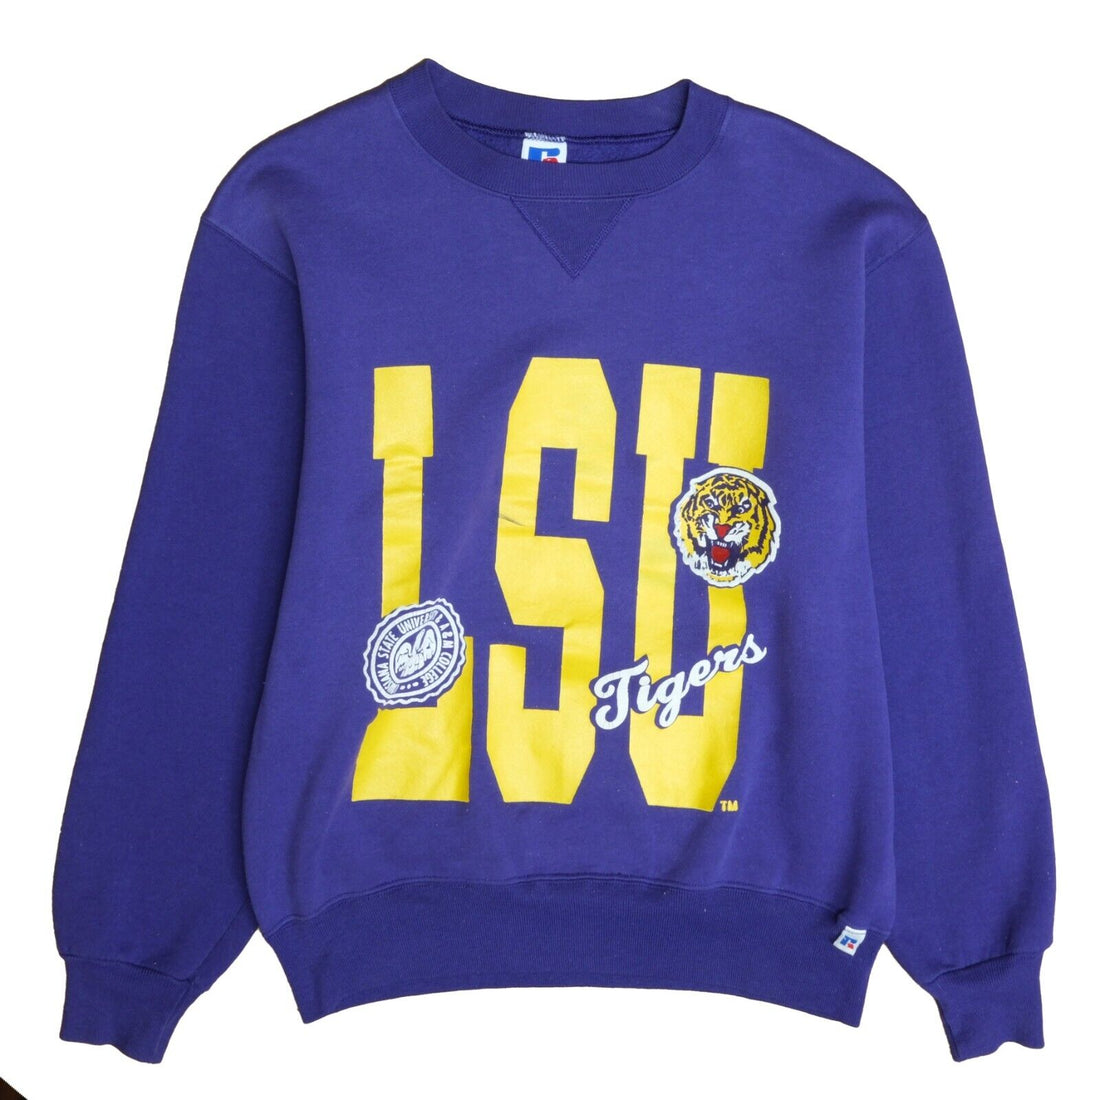 Vintage LSU Tigers Russell Athletic Sweatshirt Crewneck Size Medium NCAA